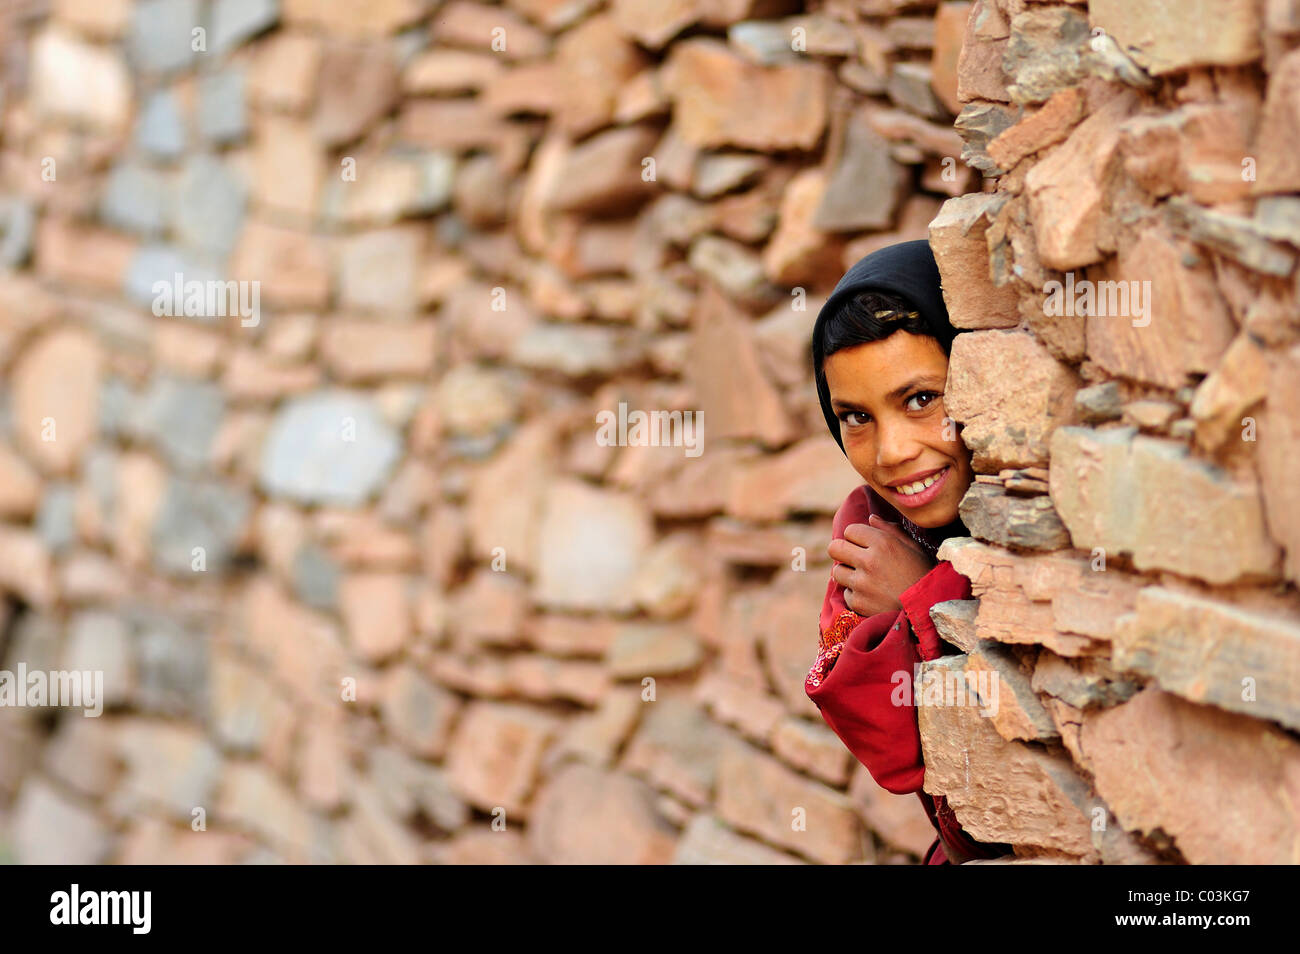 Kleines Mädchen schauen neugierig hinter der Ecke einer Wand Kelaa M'gouna, Atlasgebirge, Marokko, Afrika Stockfoto